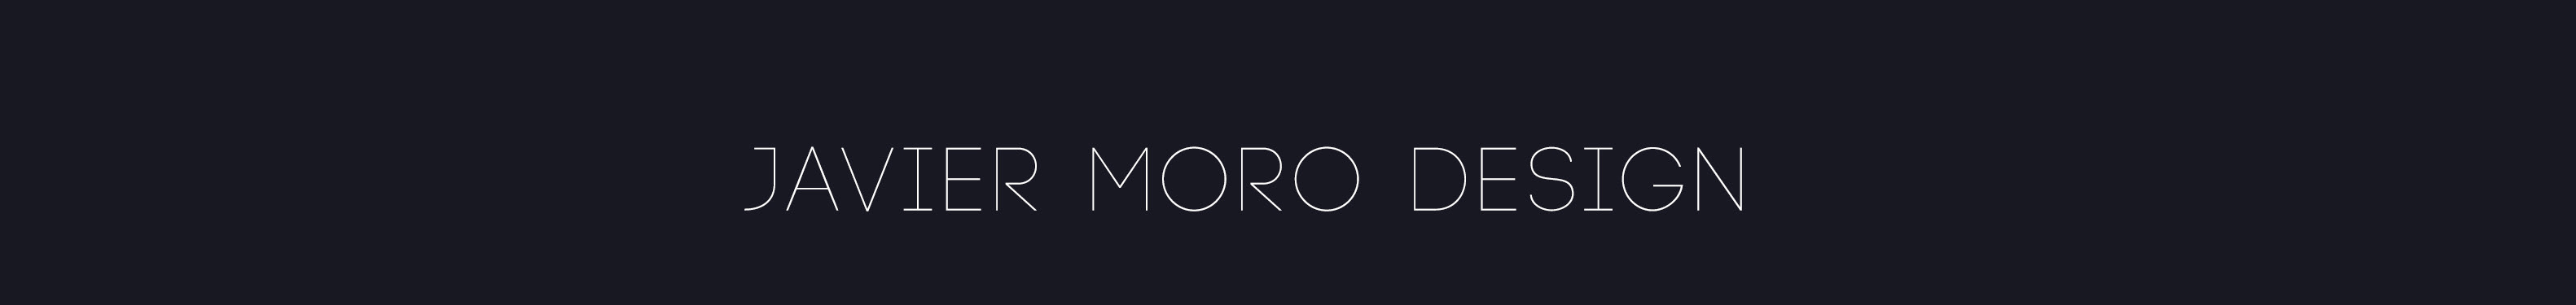 Javier Moro profil başlığı